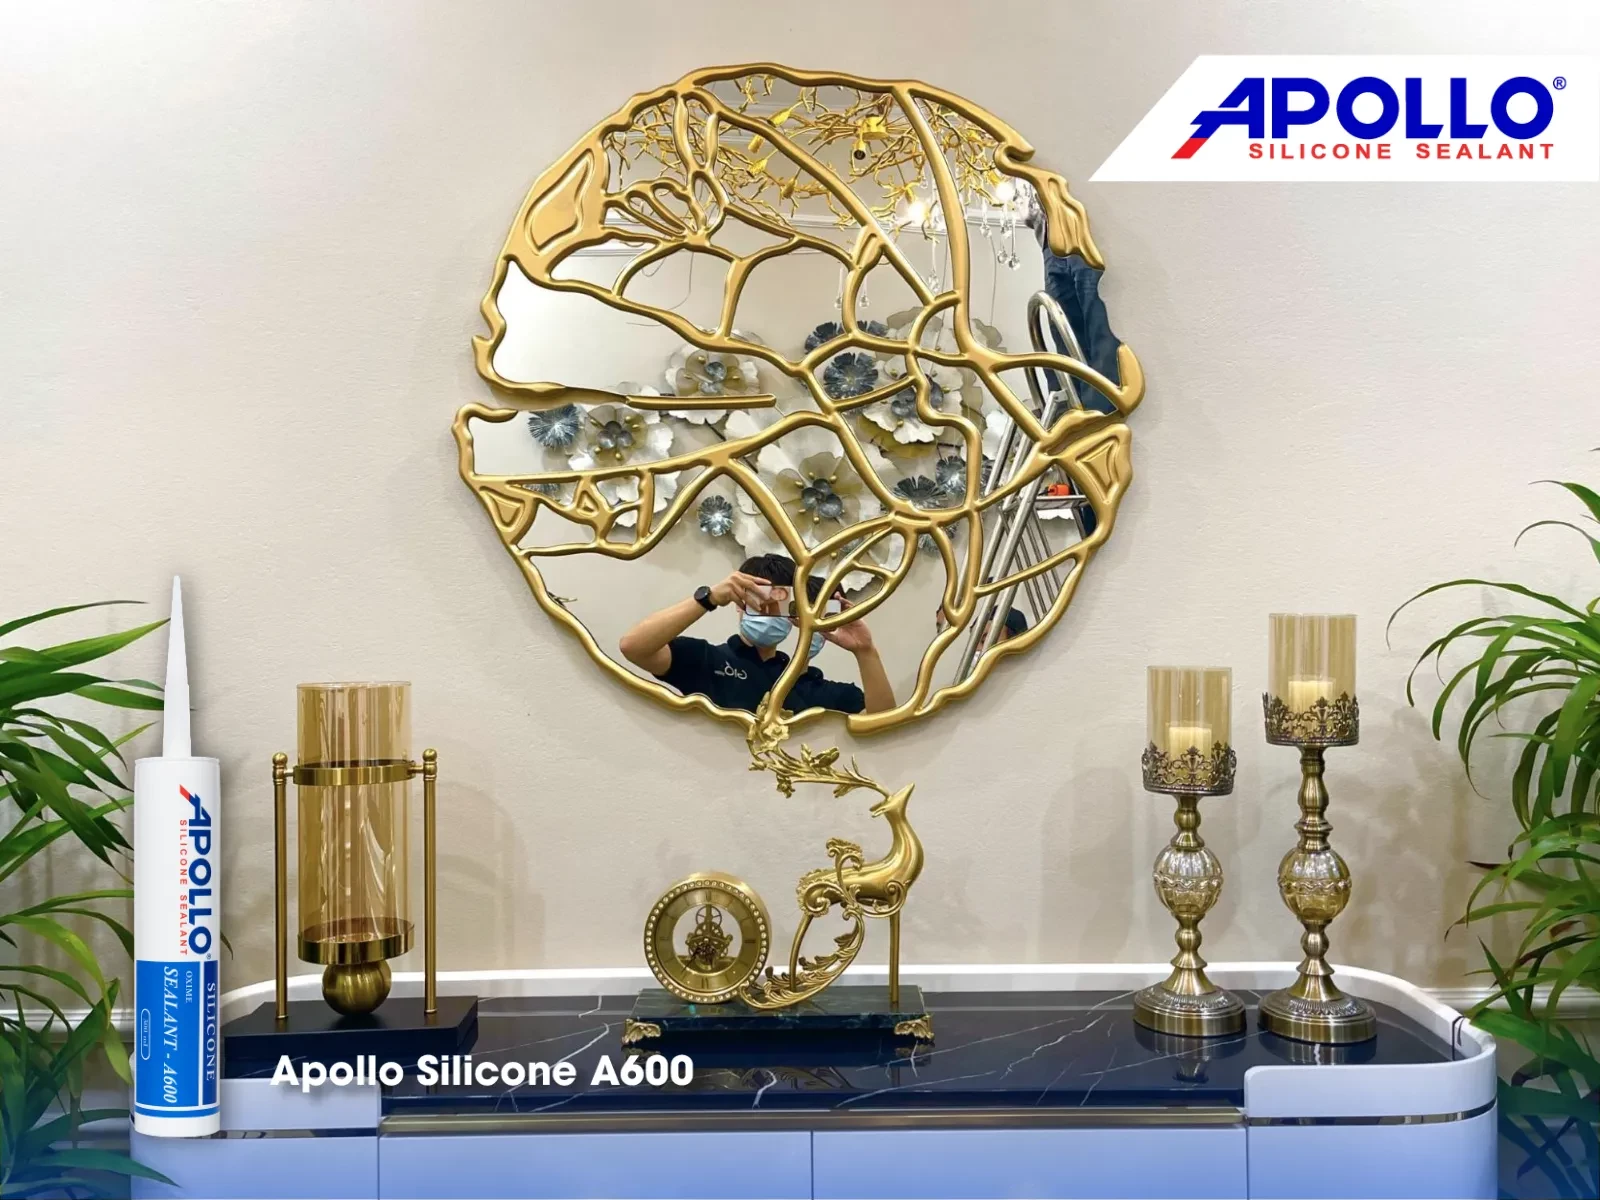 Trám viền gương trang trí với Apollo Silicone A600 sẽ đảm bảo mối nối chịu lực tốt và thẩm mỹ cực cao